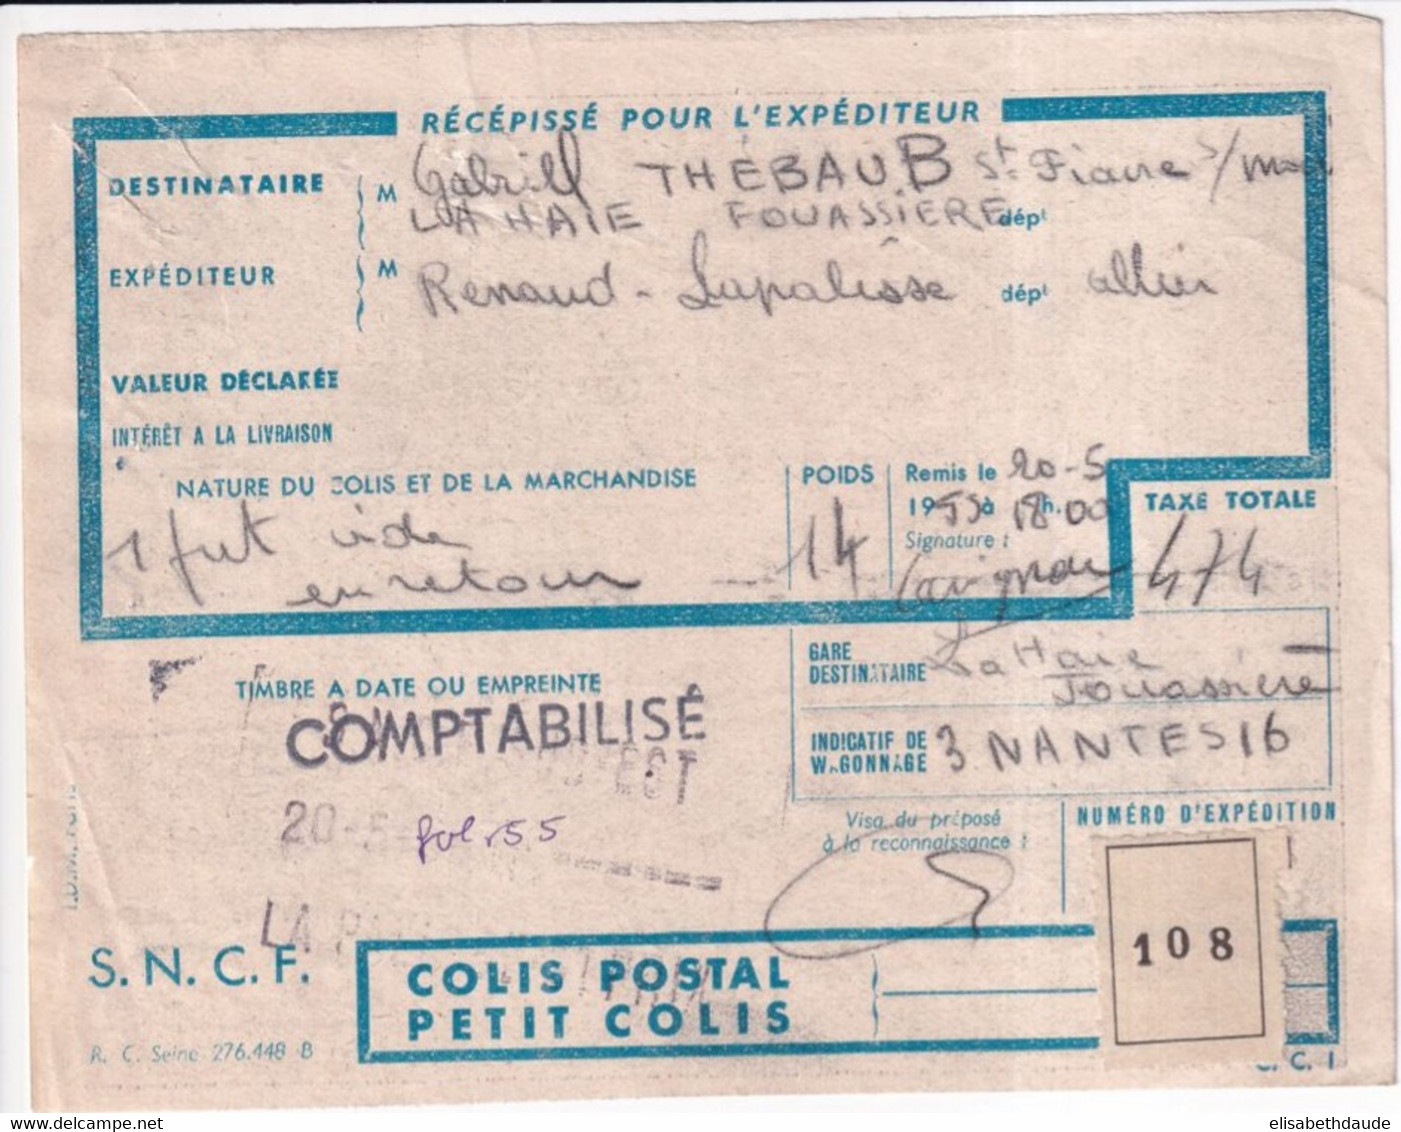 COLIS POSTAUX - 1955 - RECEPISSE EXPEDITION De LAPALISSE (ALLIER) => LA HAIE FOUASSIERE (LOIRE INFERIEURE) - Brieven & Documenten